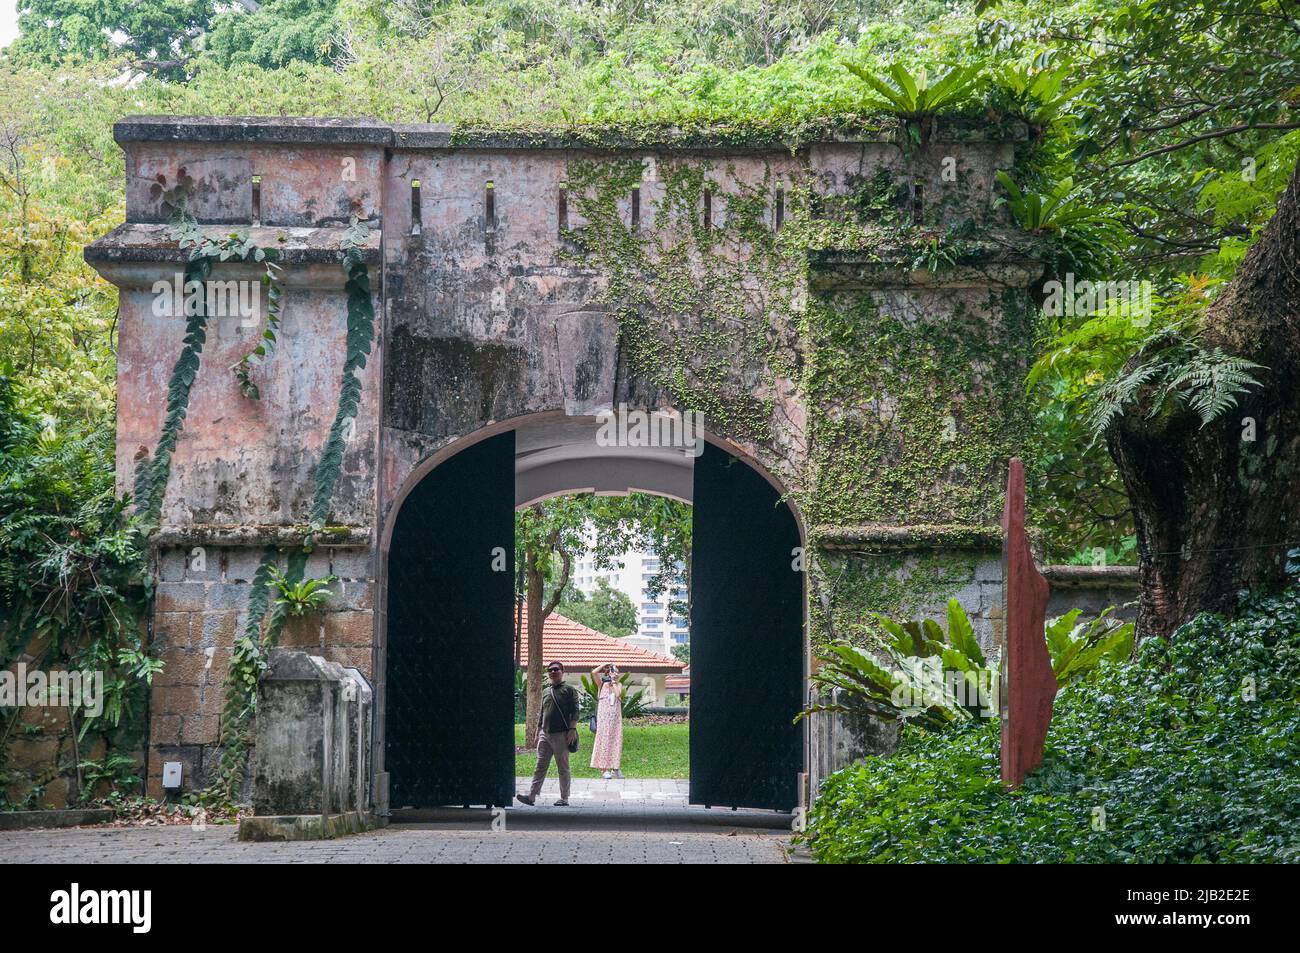 Porte survivante du fort britannique original à fort Canning Park, Singapour Banque D'Images